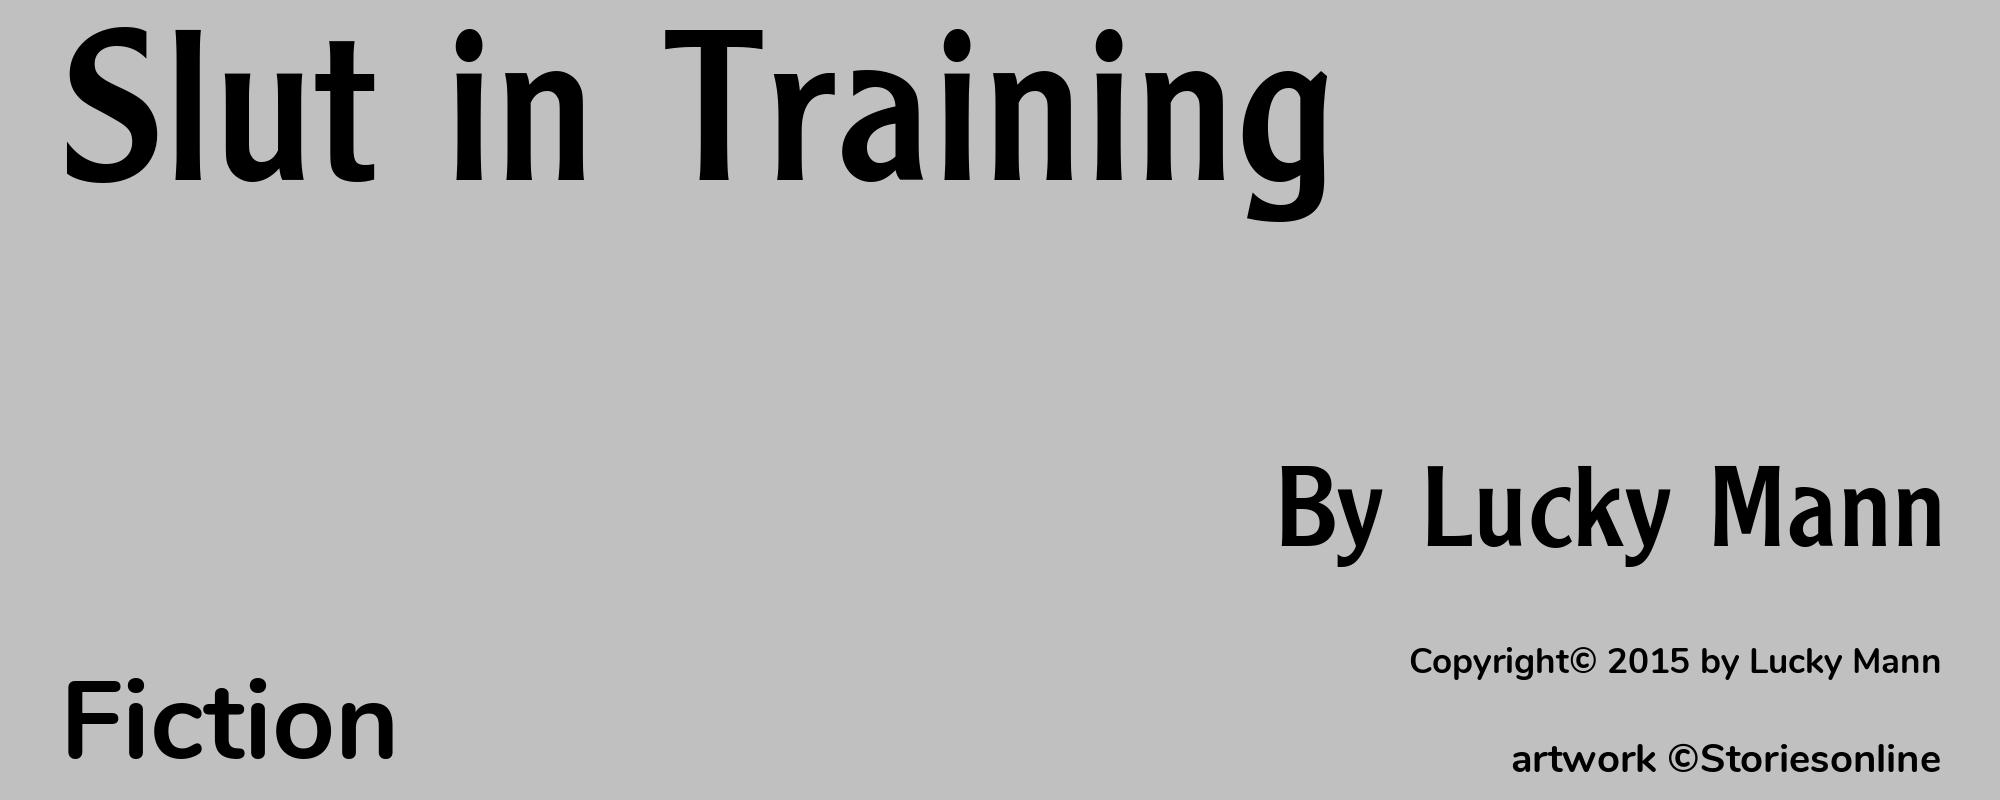 Slut in Training - Cover